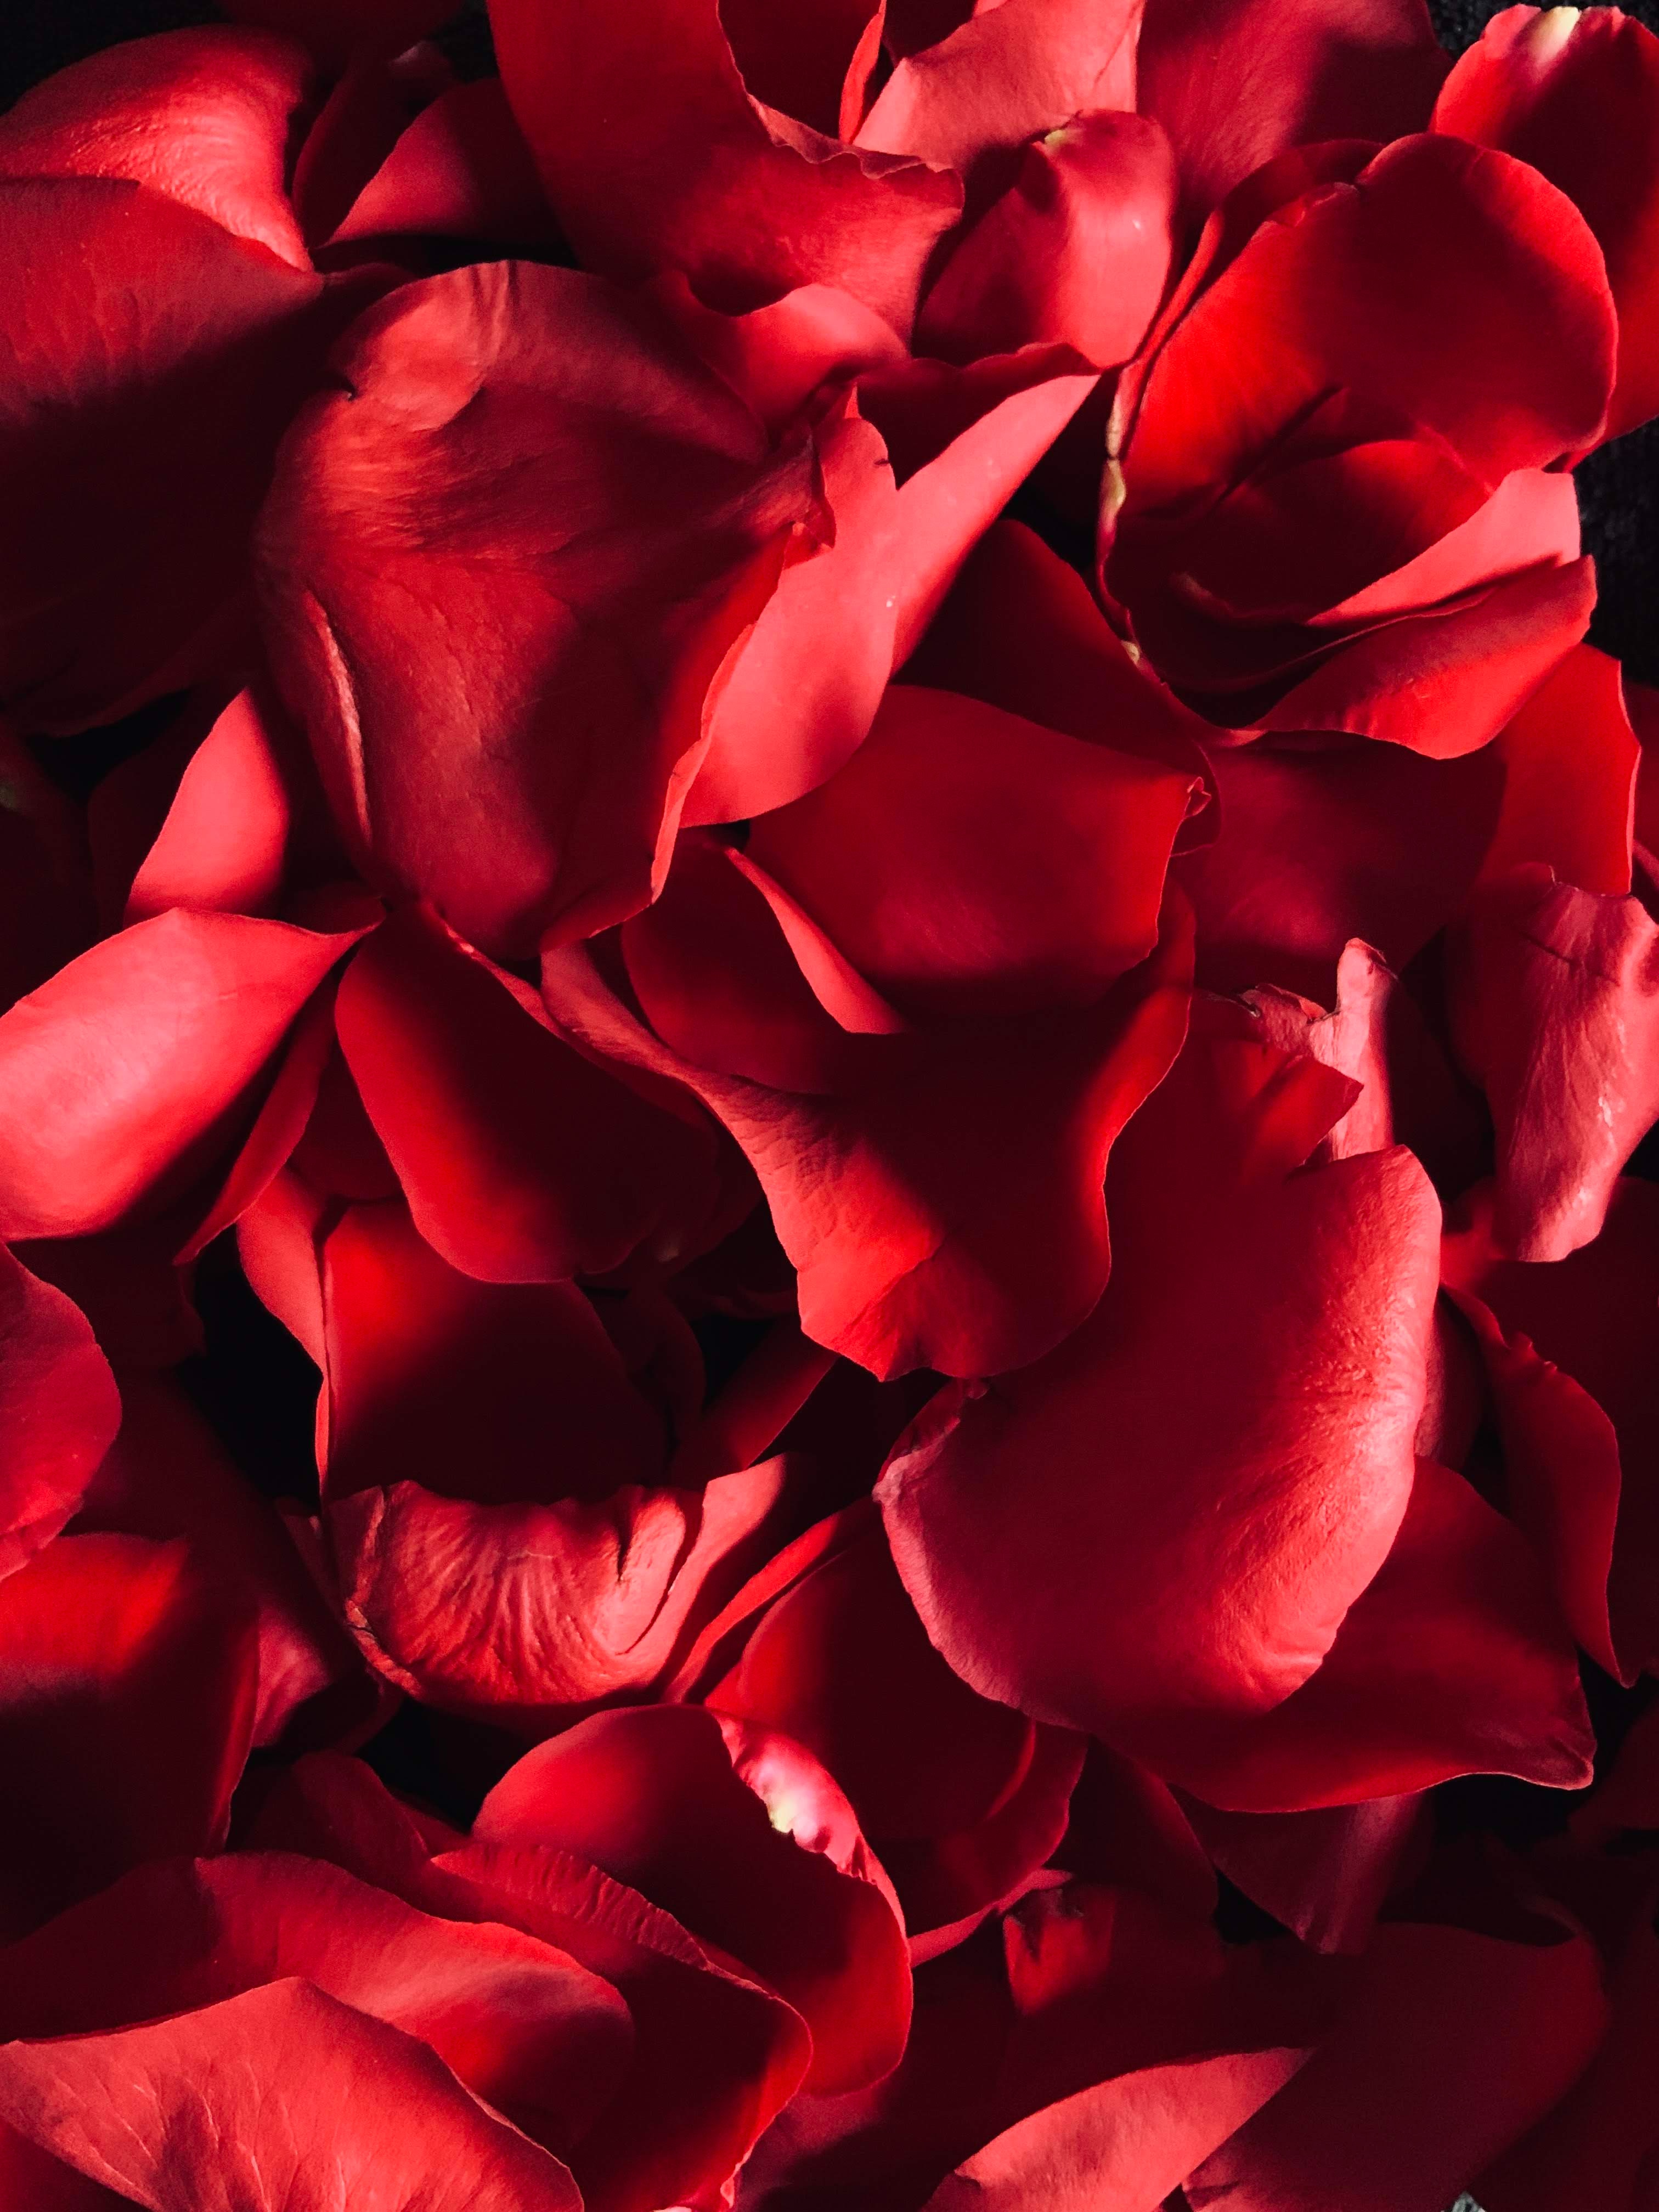 Red rose petals. | Source: Unsplash